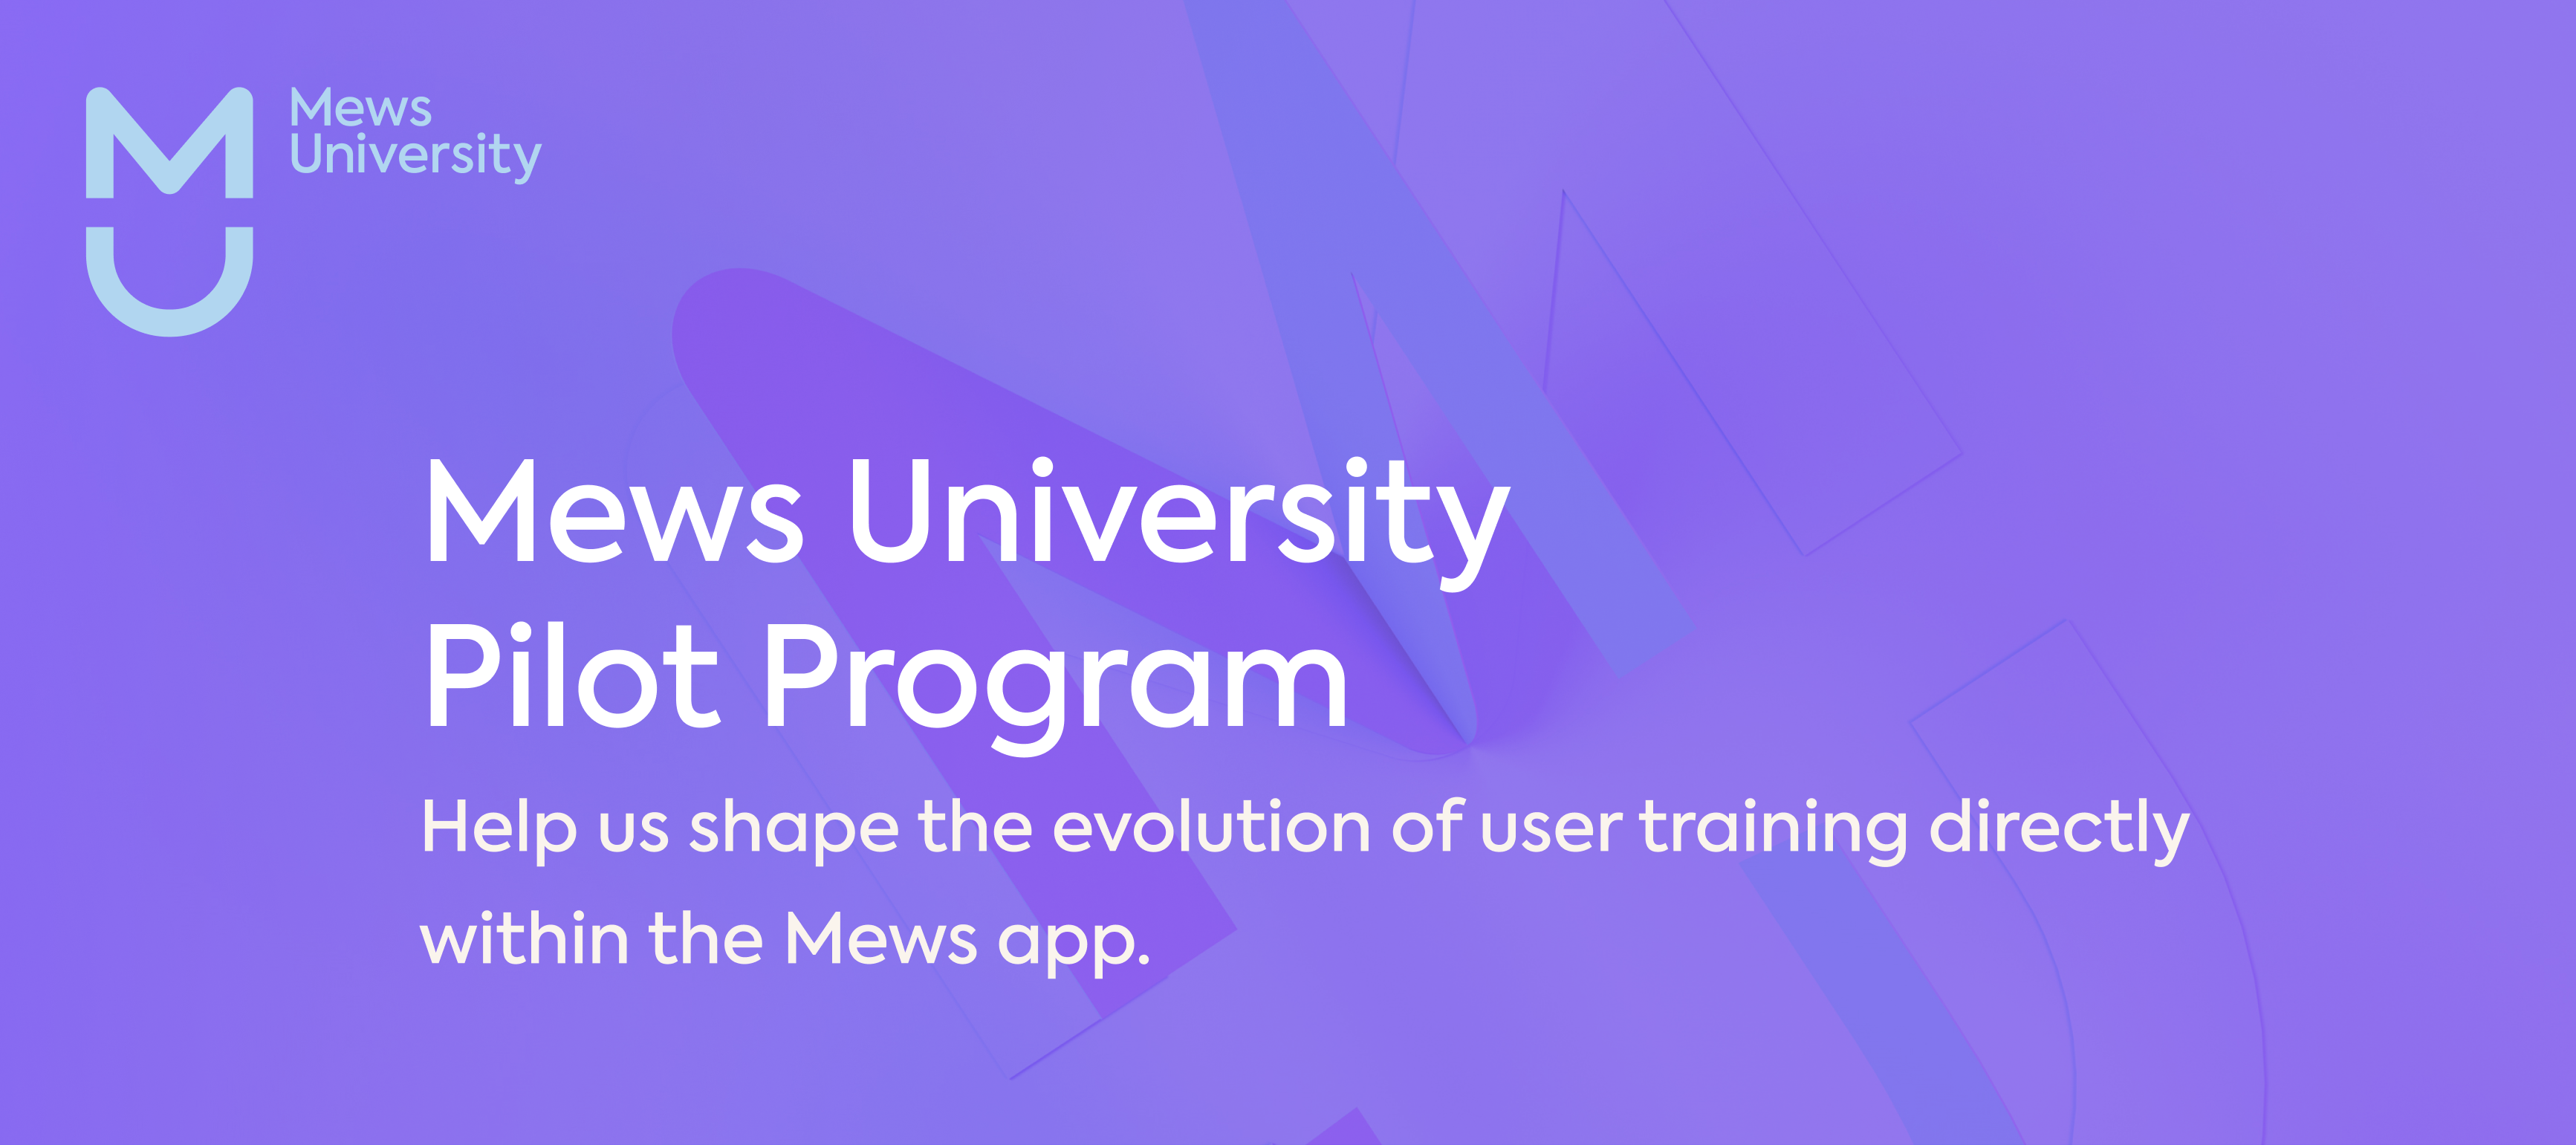 Join the Mews University Pilot Program for In-App Training!